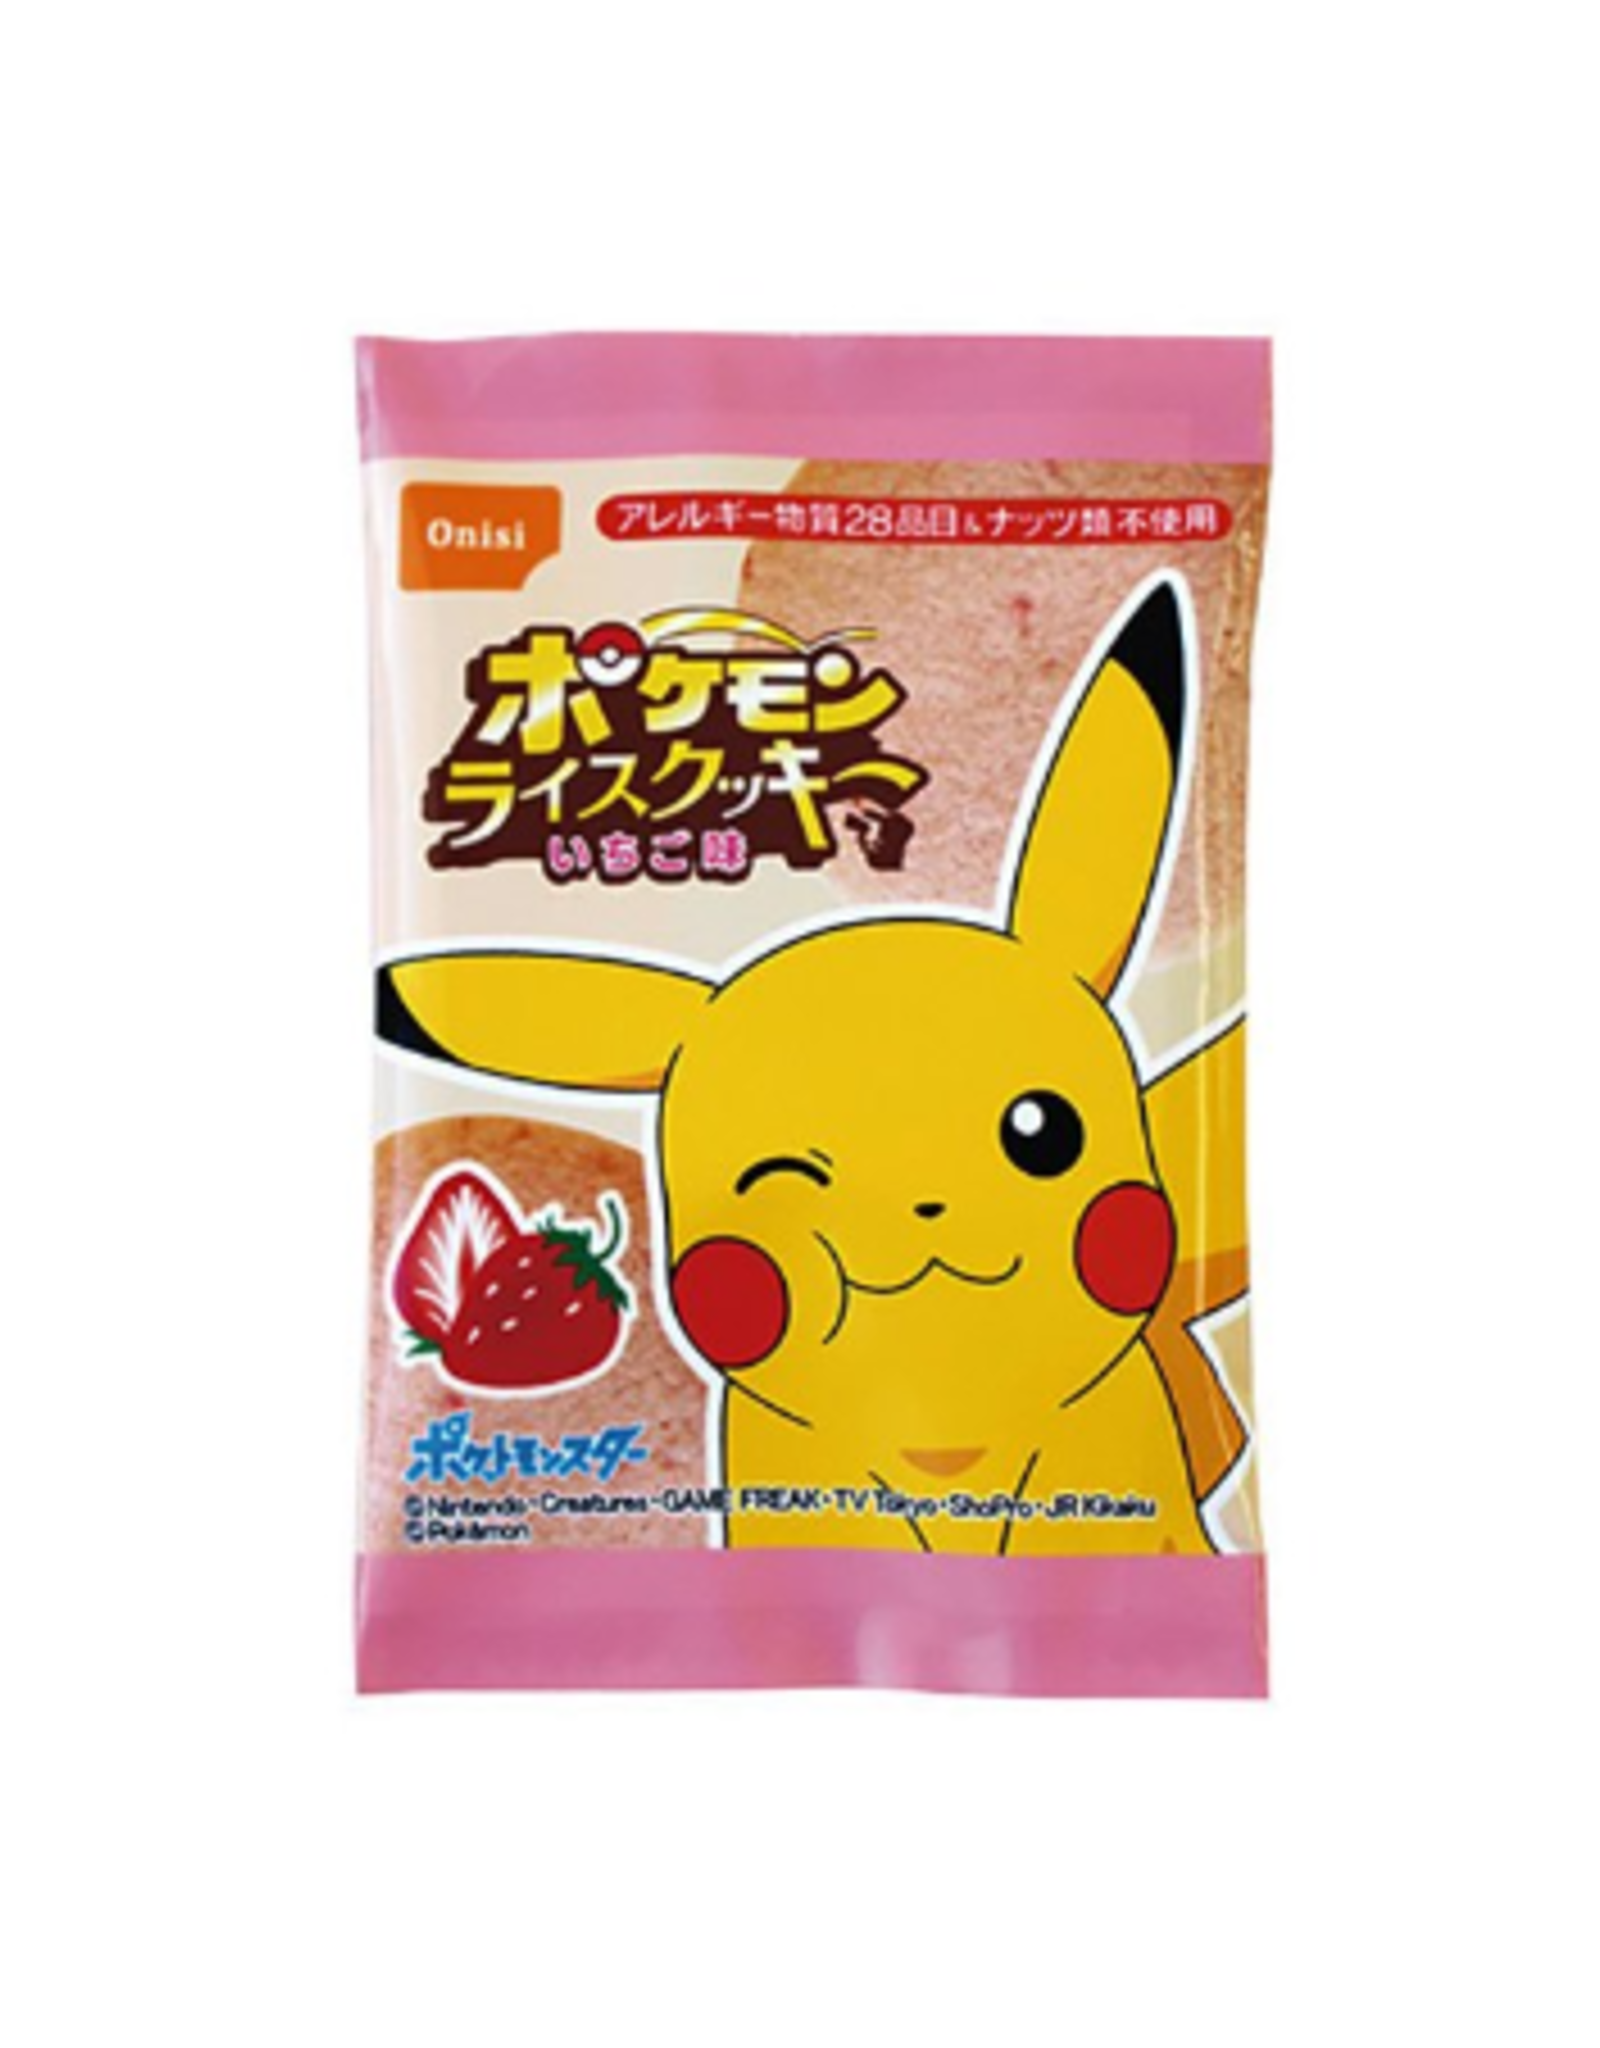 Pokémon Rice Cookie - Strawberry - 8g